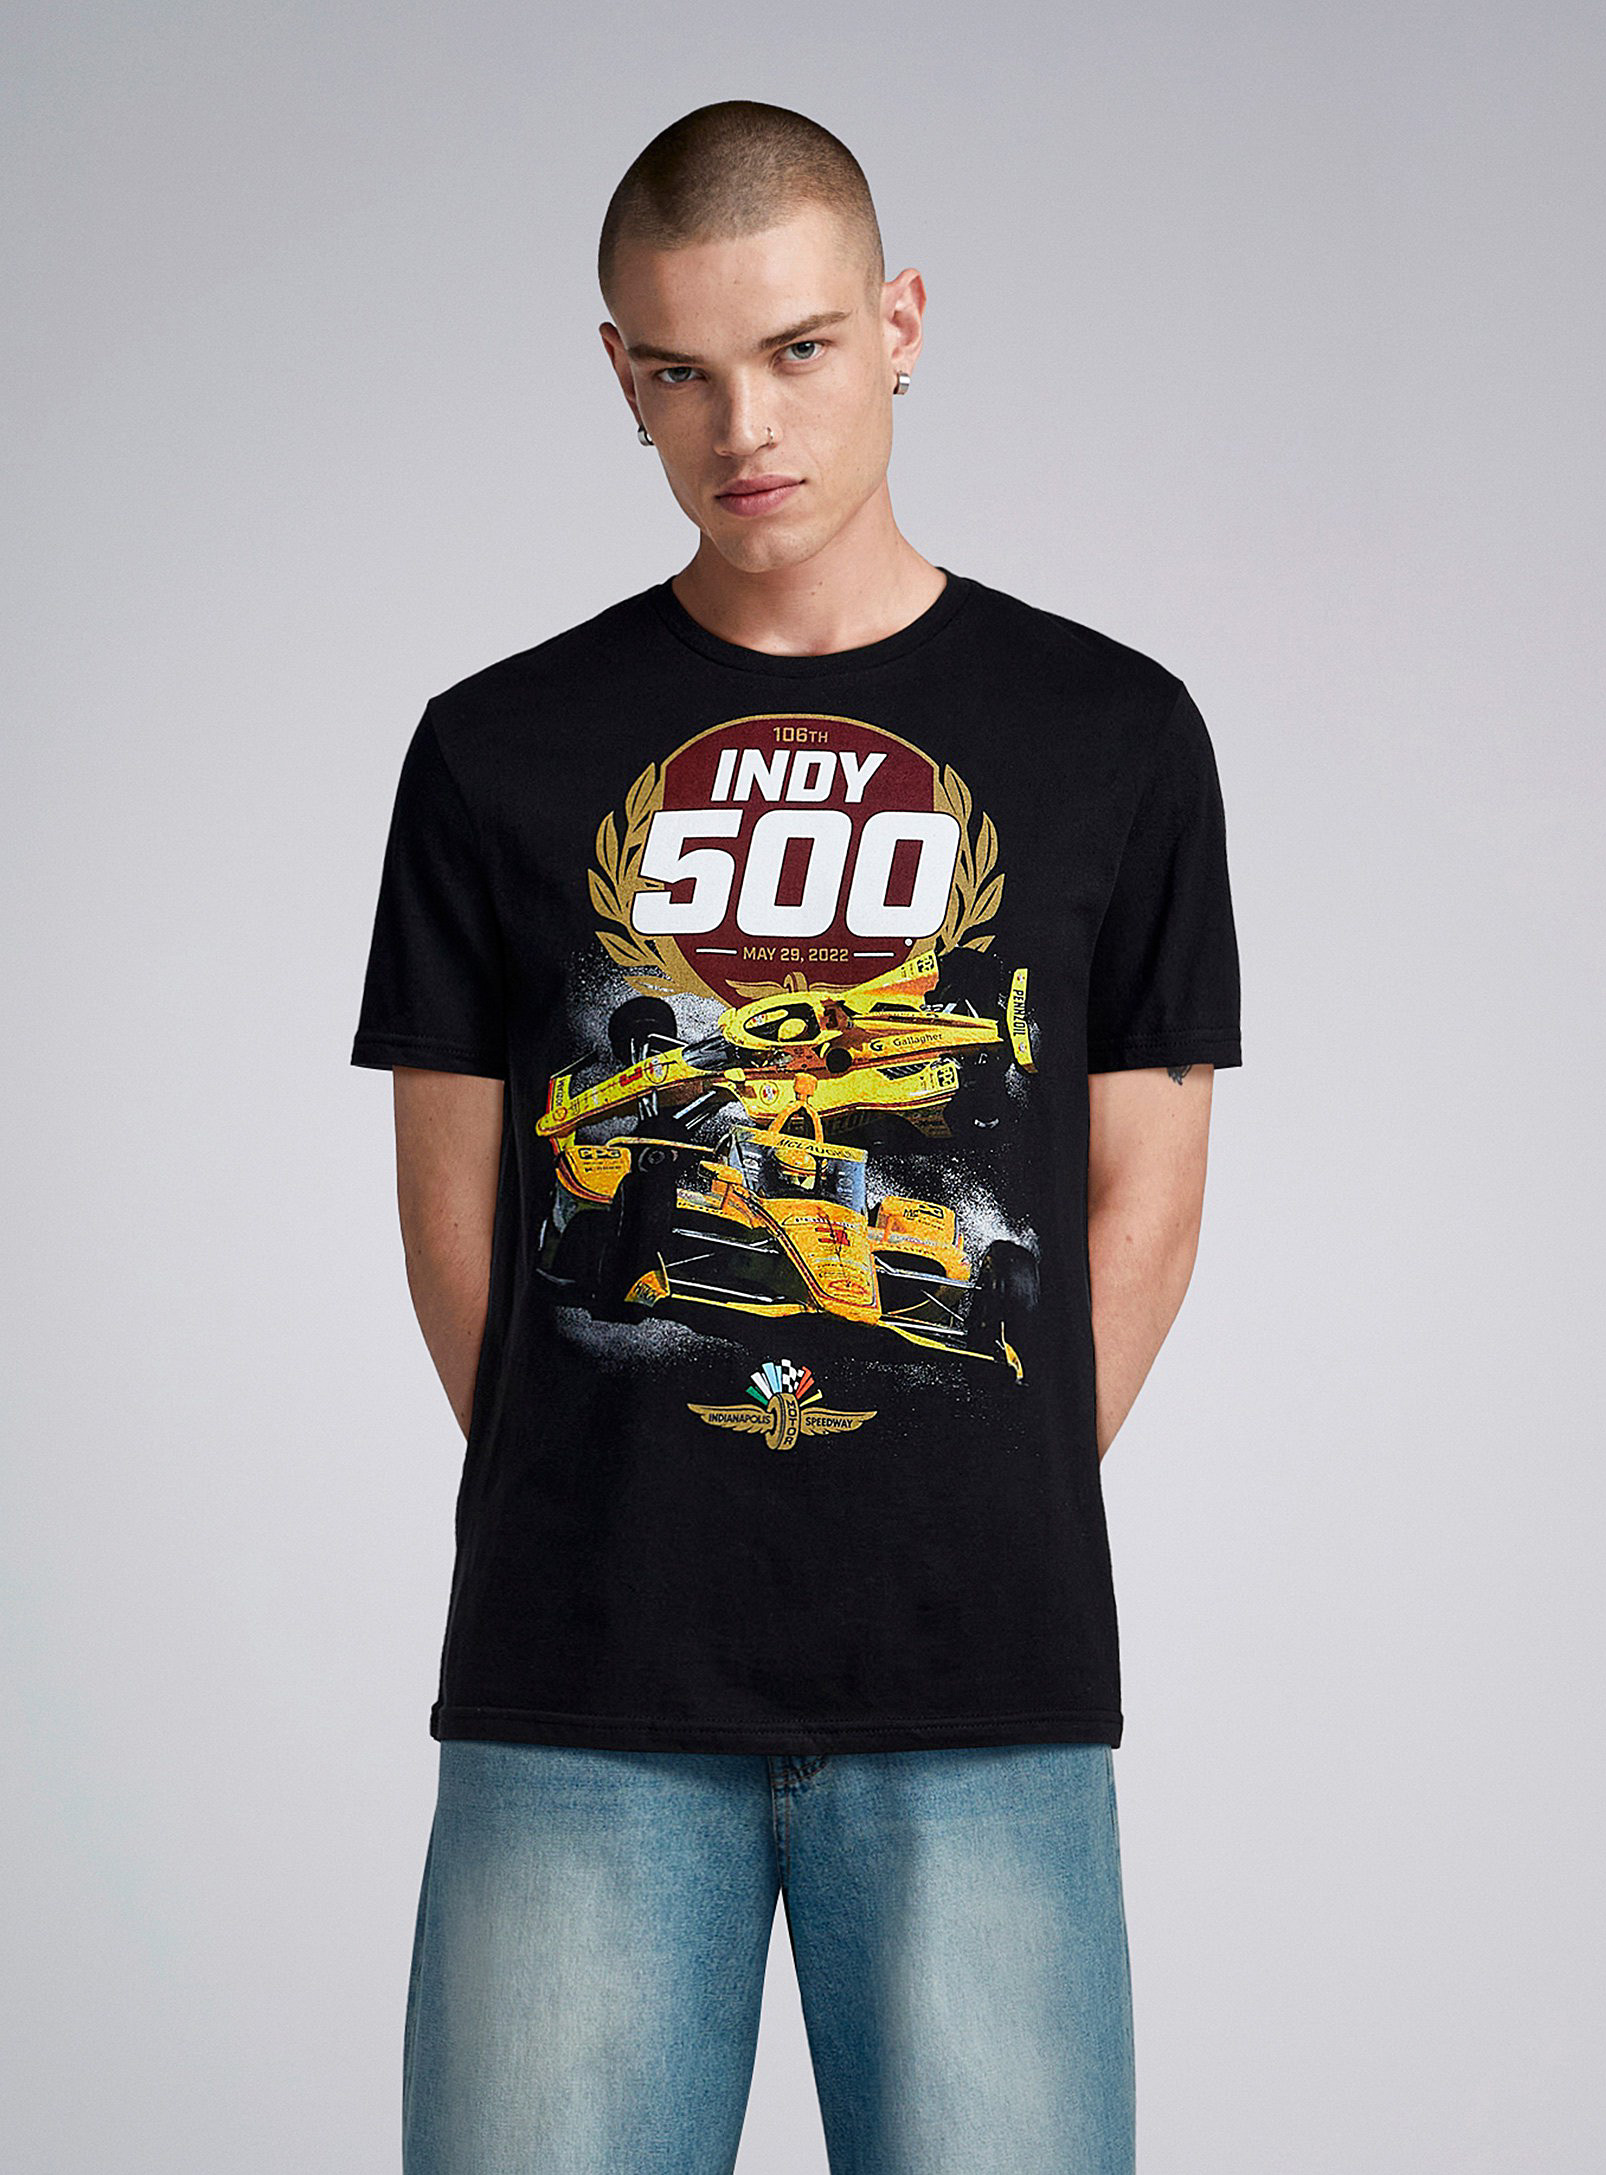 Djab - Le t-shirt imprimé Indy 500